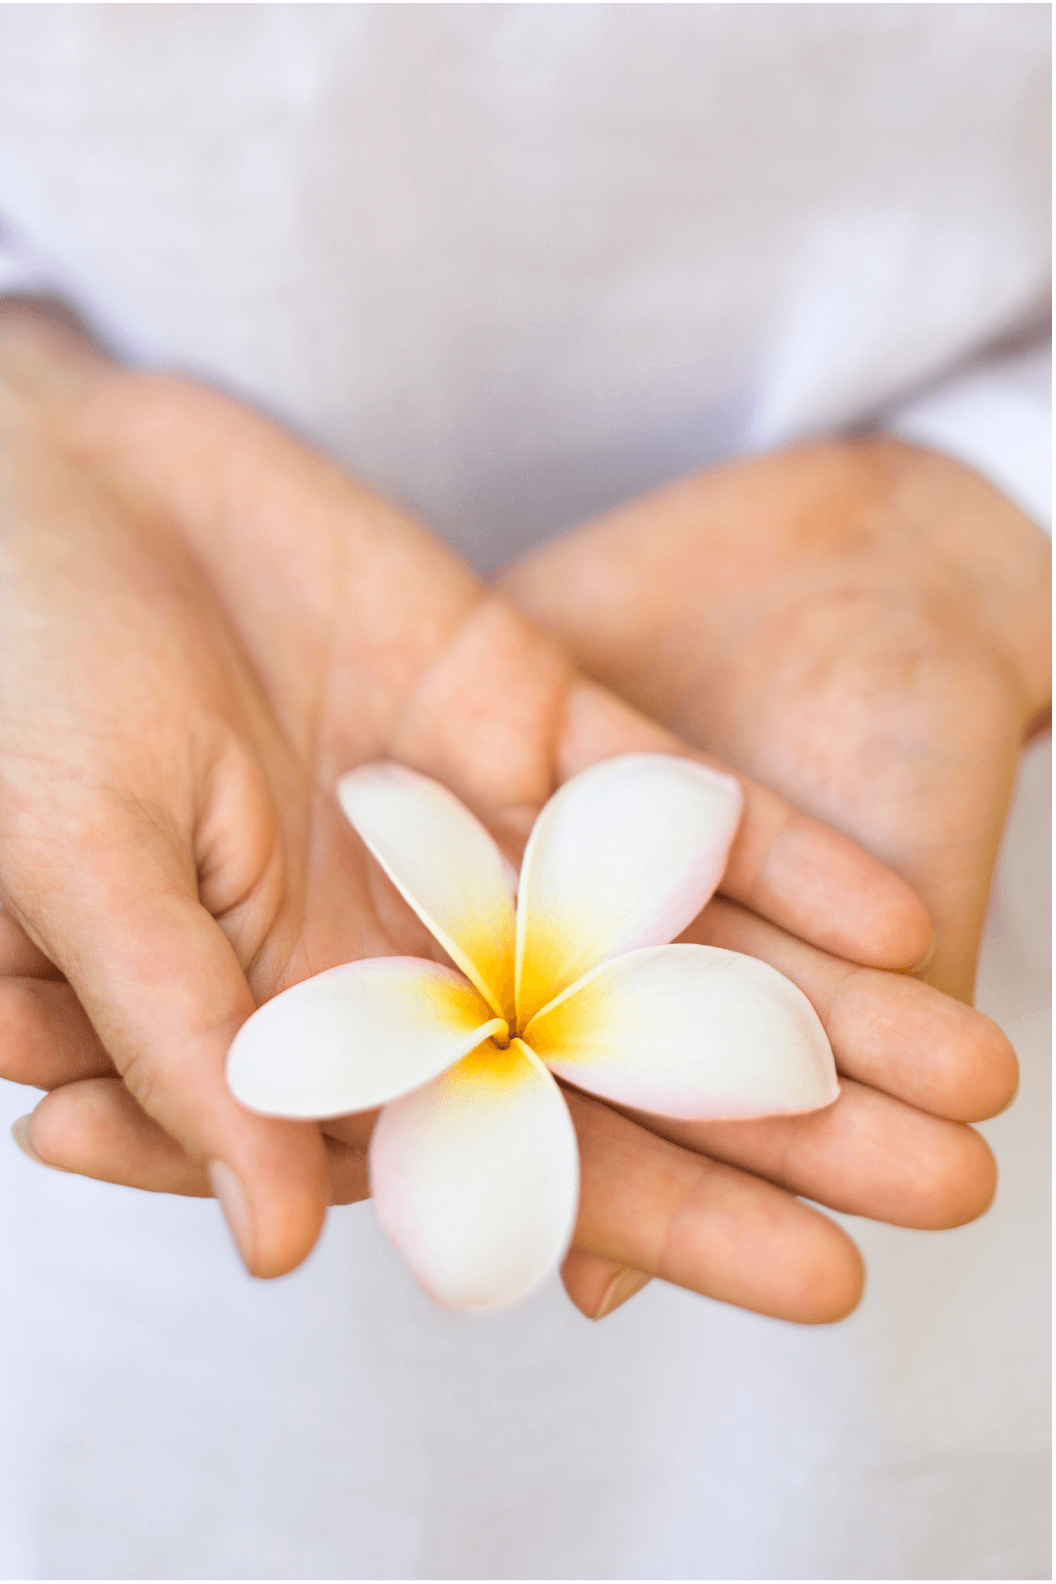 le fleurs âges-tarifs -parrainage-massage